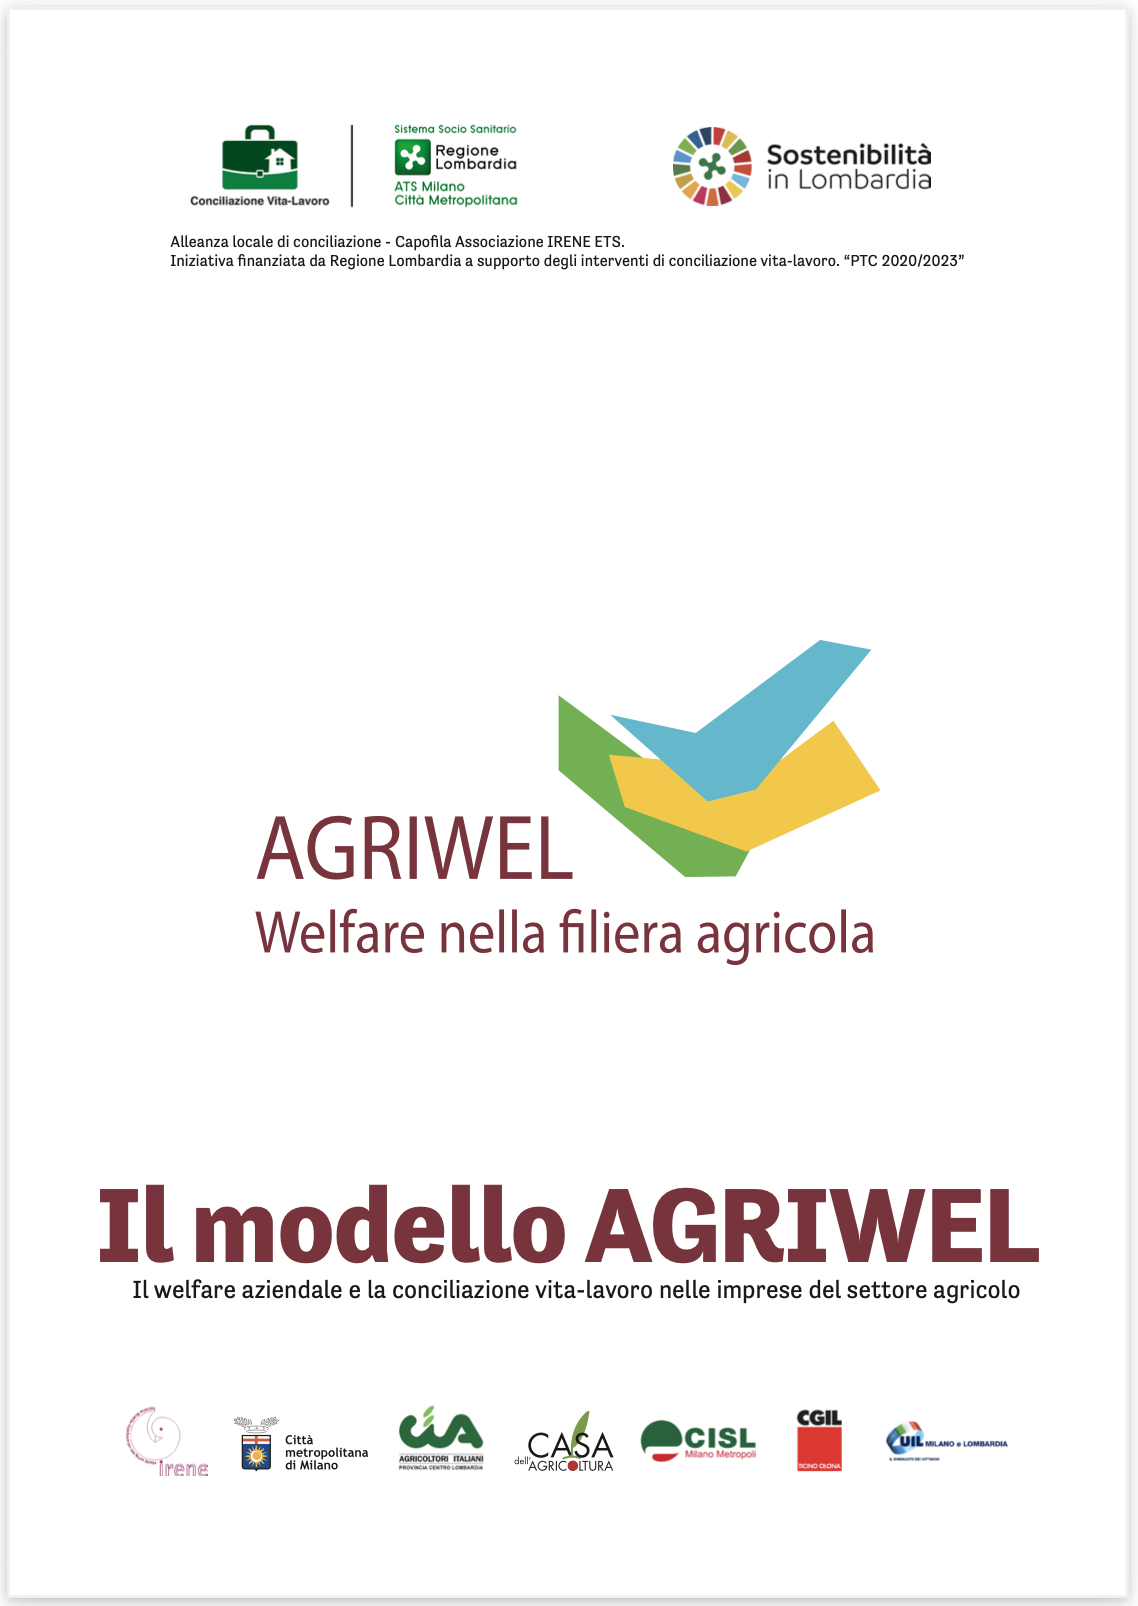 Il modello AGRIWEL. Il welfare aziendale e la conciliazione vita-lavoro nelle imprese del settore agricolo